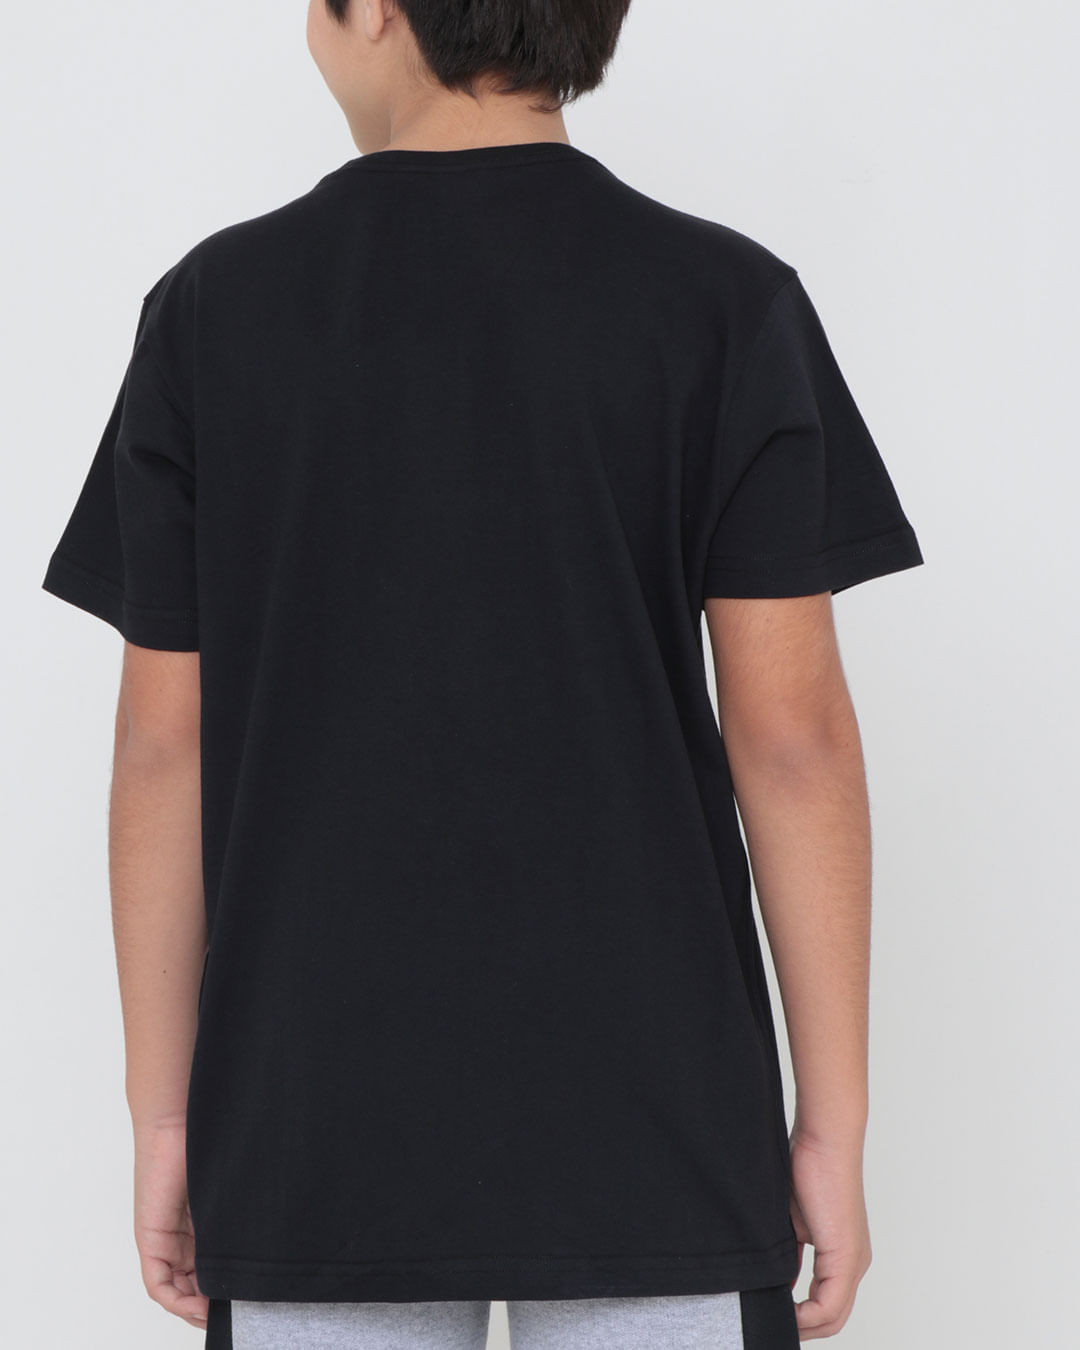 Camiseta-Juvenil-Estampa-Caveira-Manga-Curta-Preta